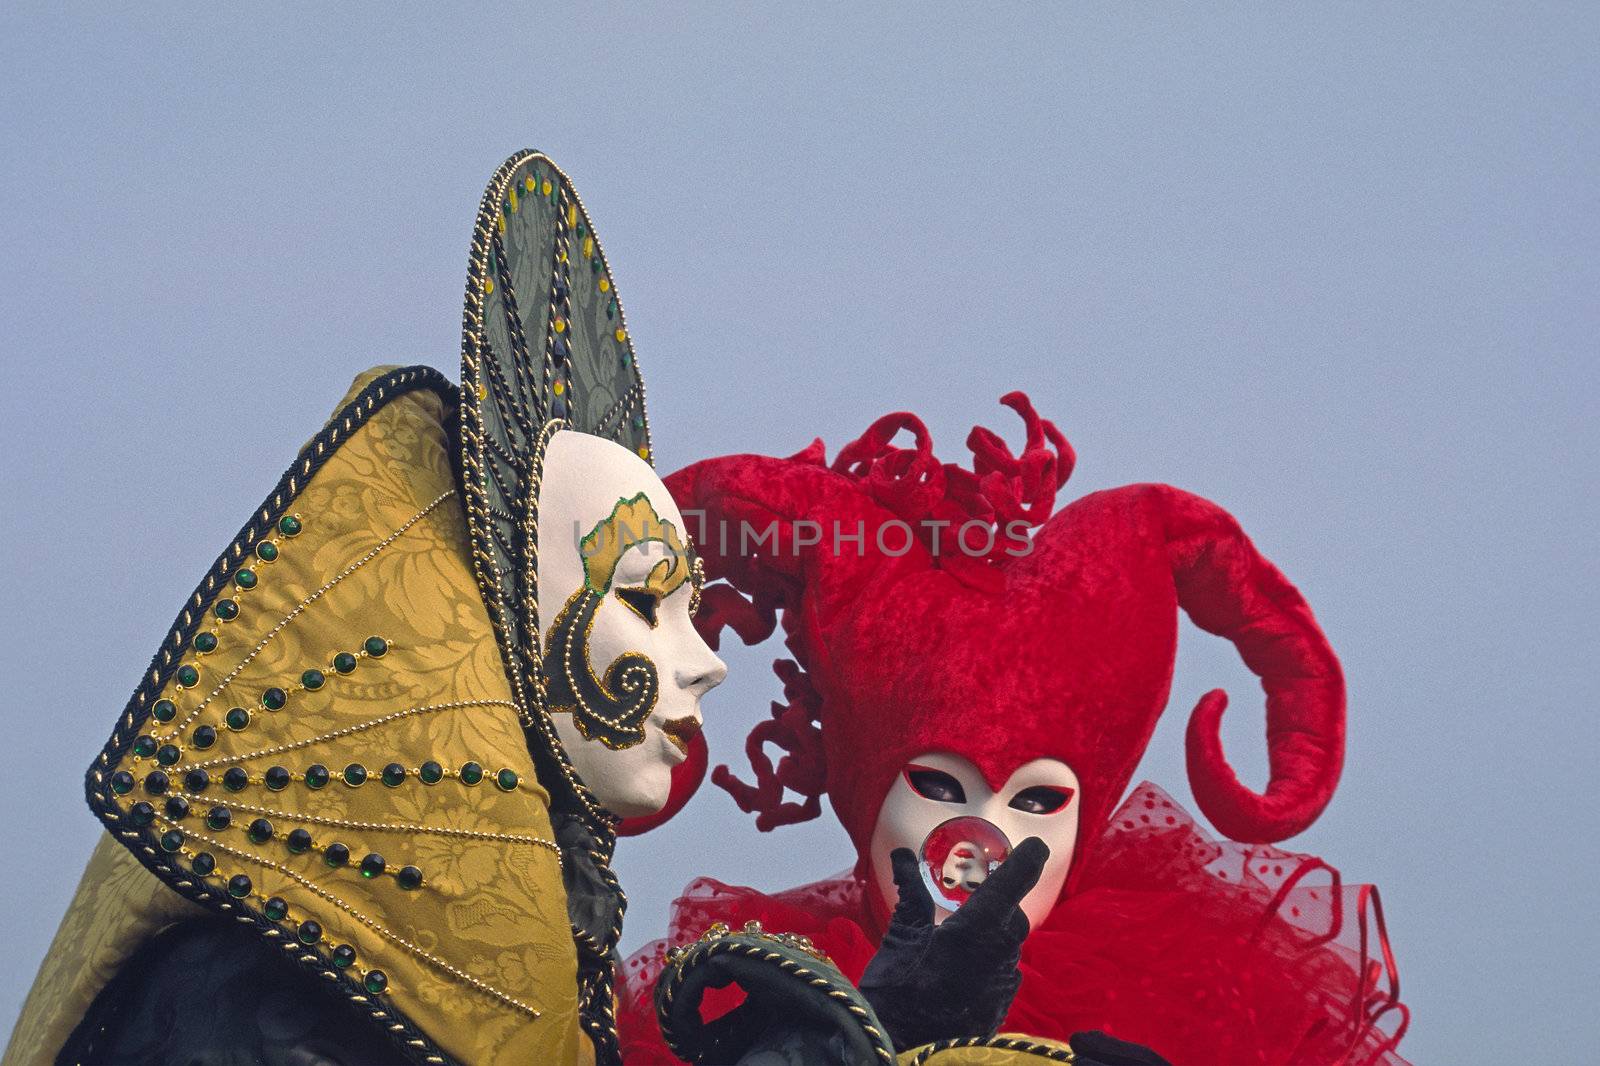 Carnival in Venice, Mask 150a
Karneval in Venedig, Maske 150a